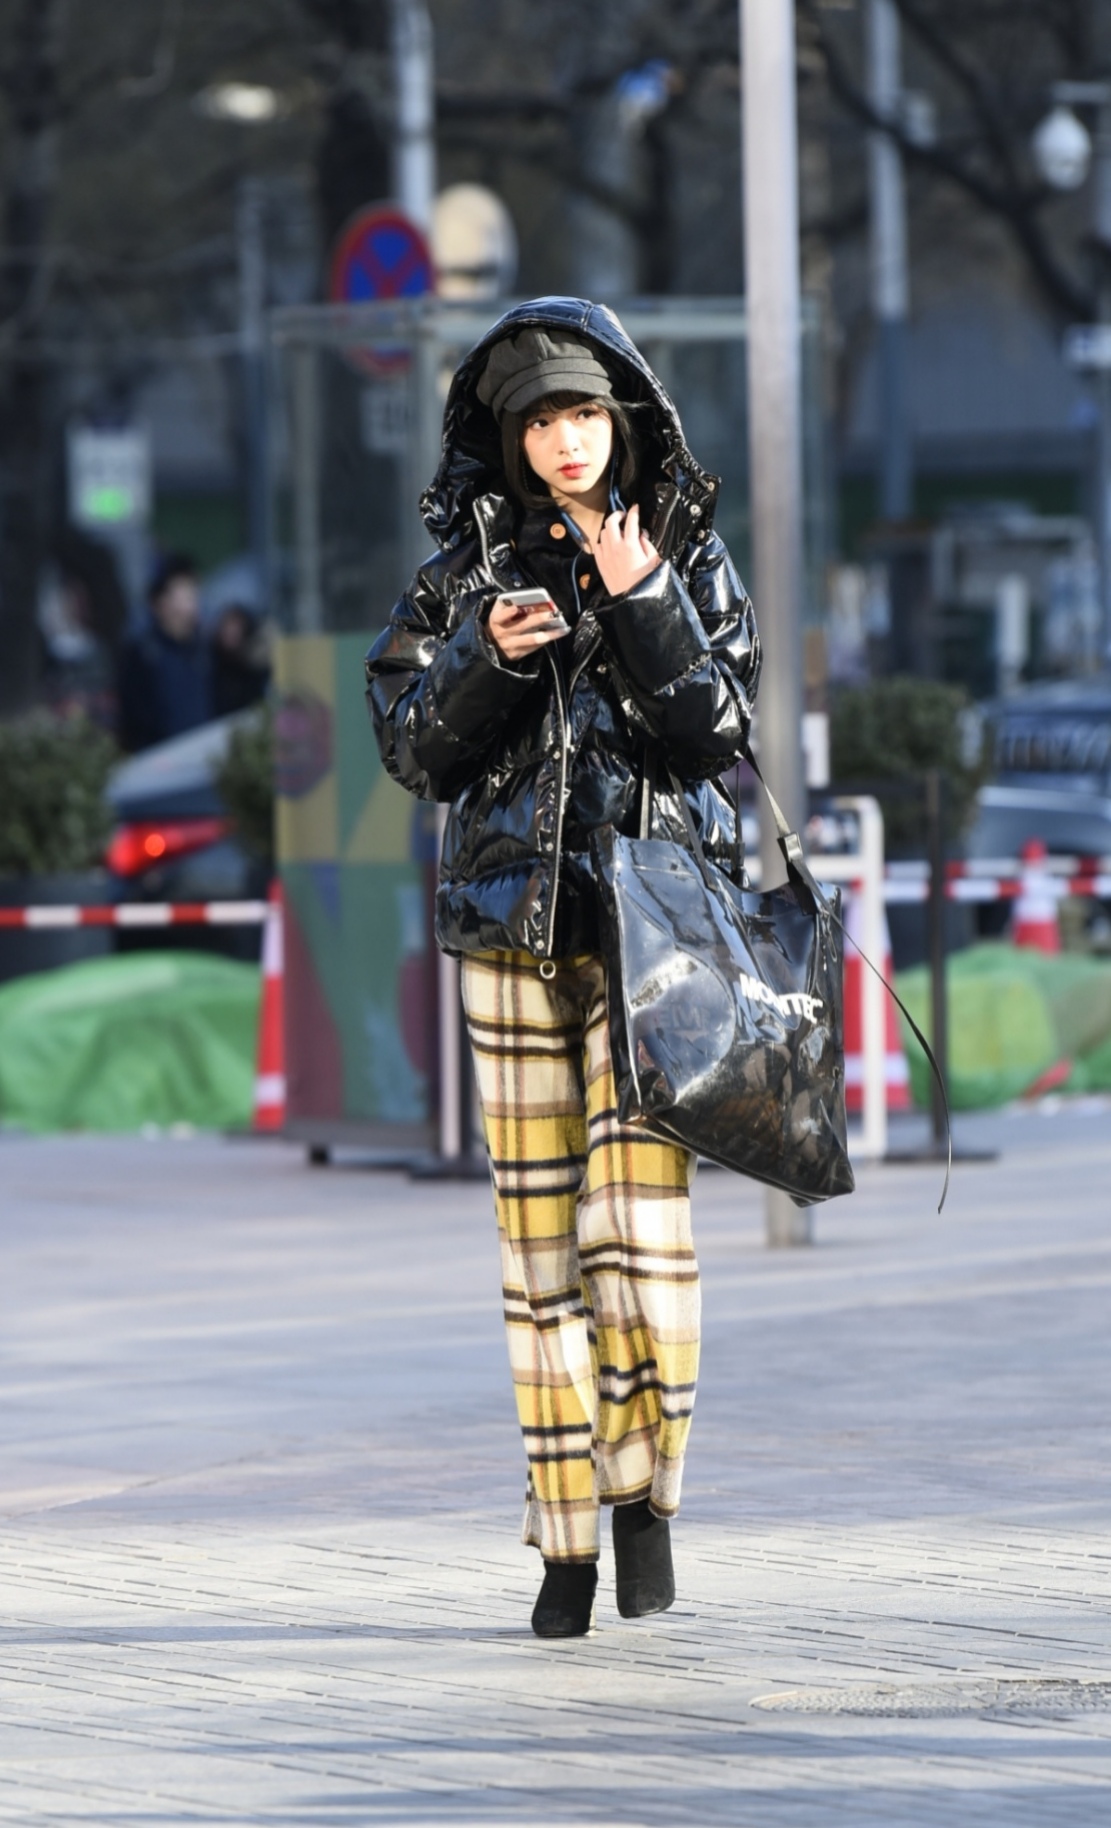 北京街拍:冬日的街头,穿格子衣装的姑娘优雅气质又时尚